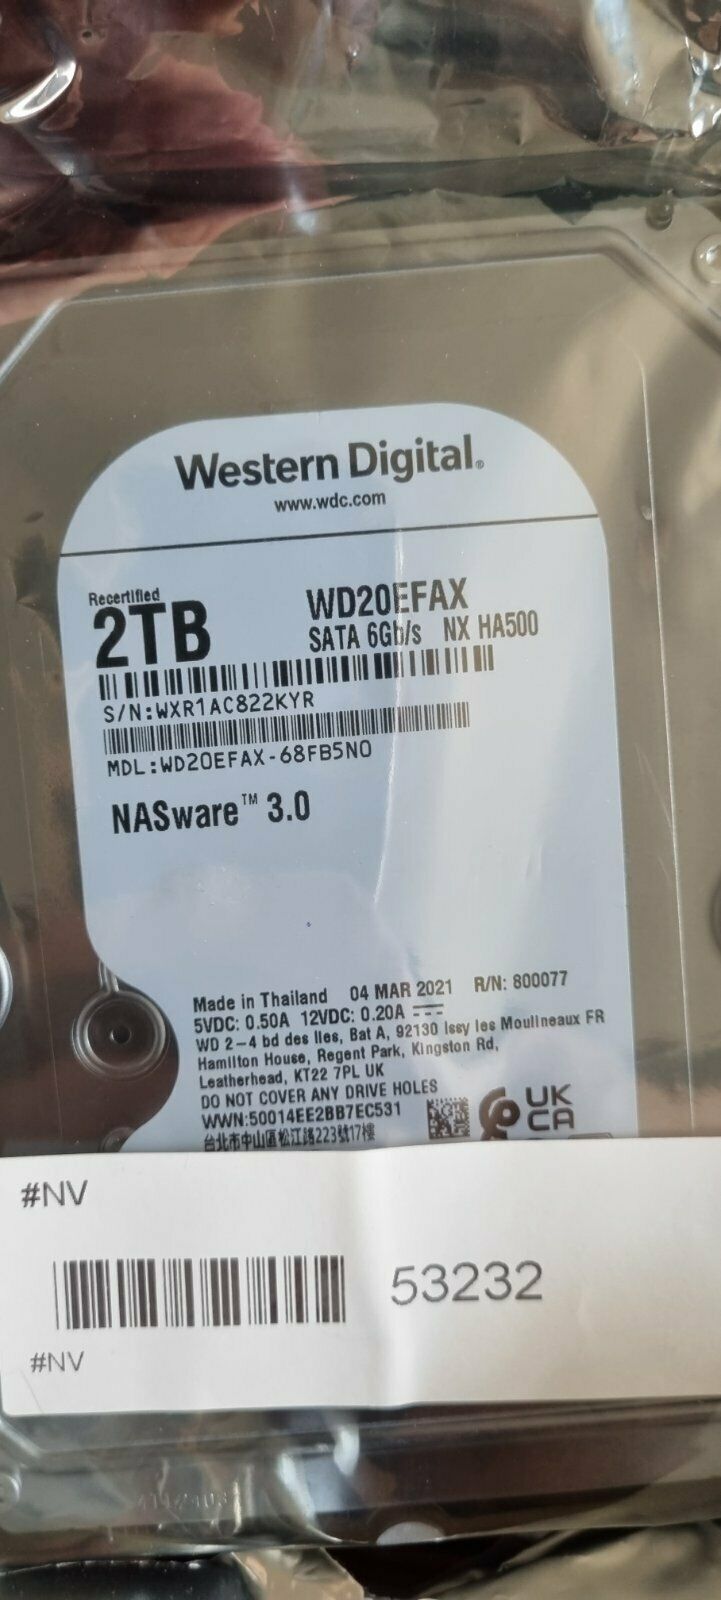 Western Digital RED 2TB WD20EFAX NASware 3.0 "0" Betriebsstunden